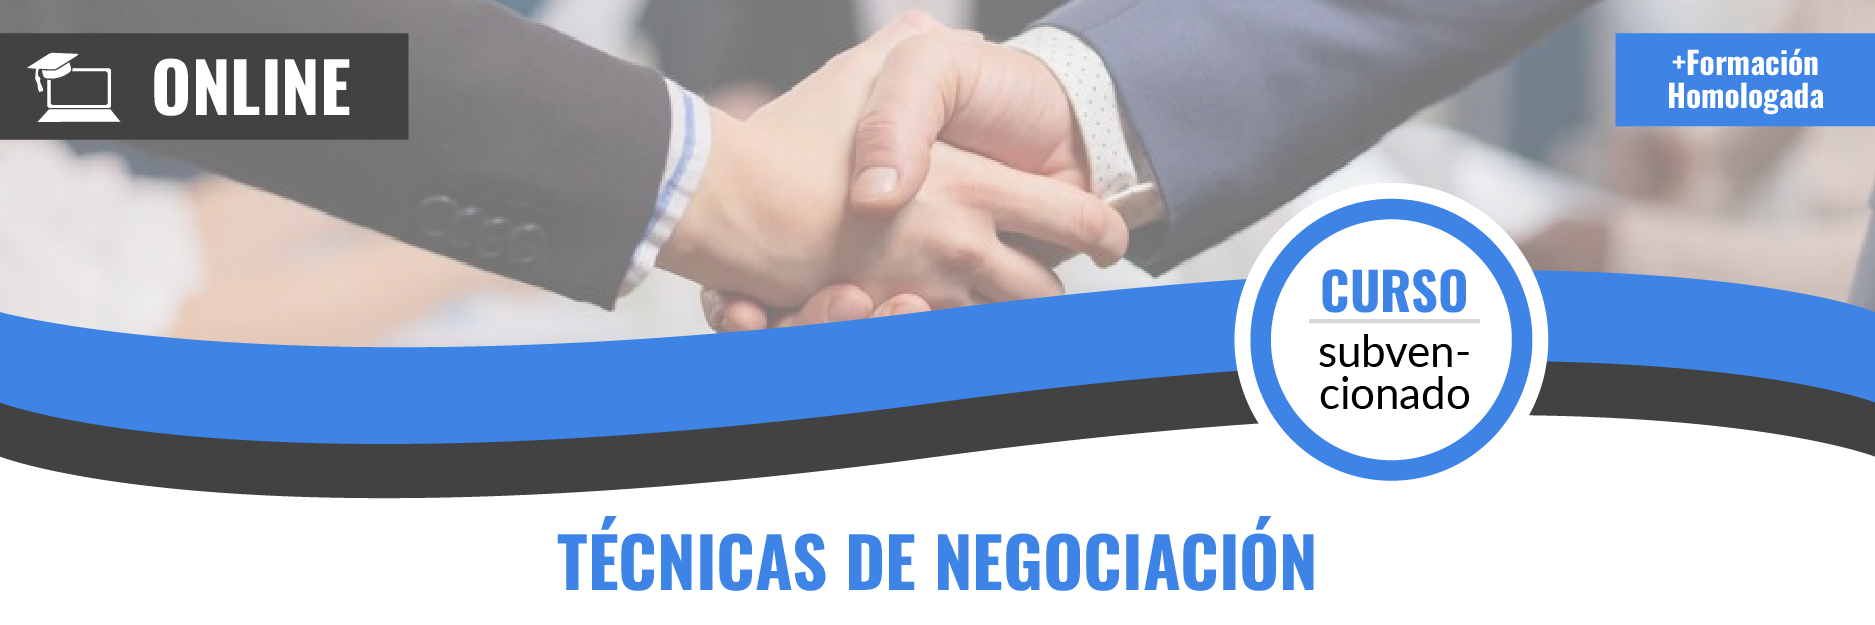 Banners_22-23-online_Técnicas de negociación